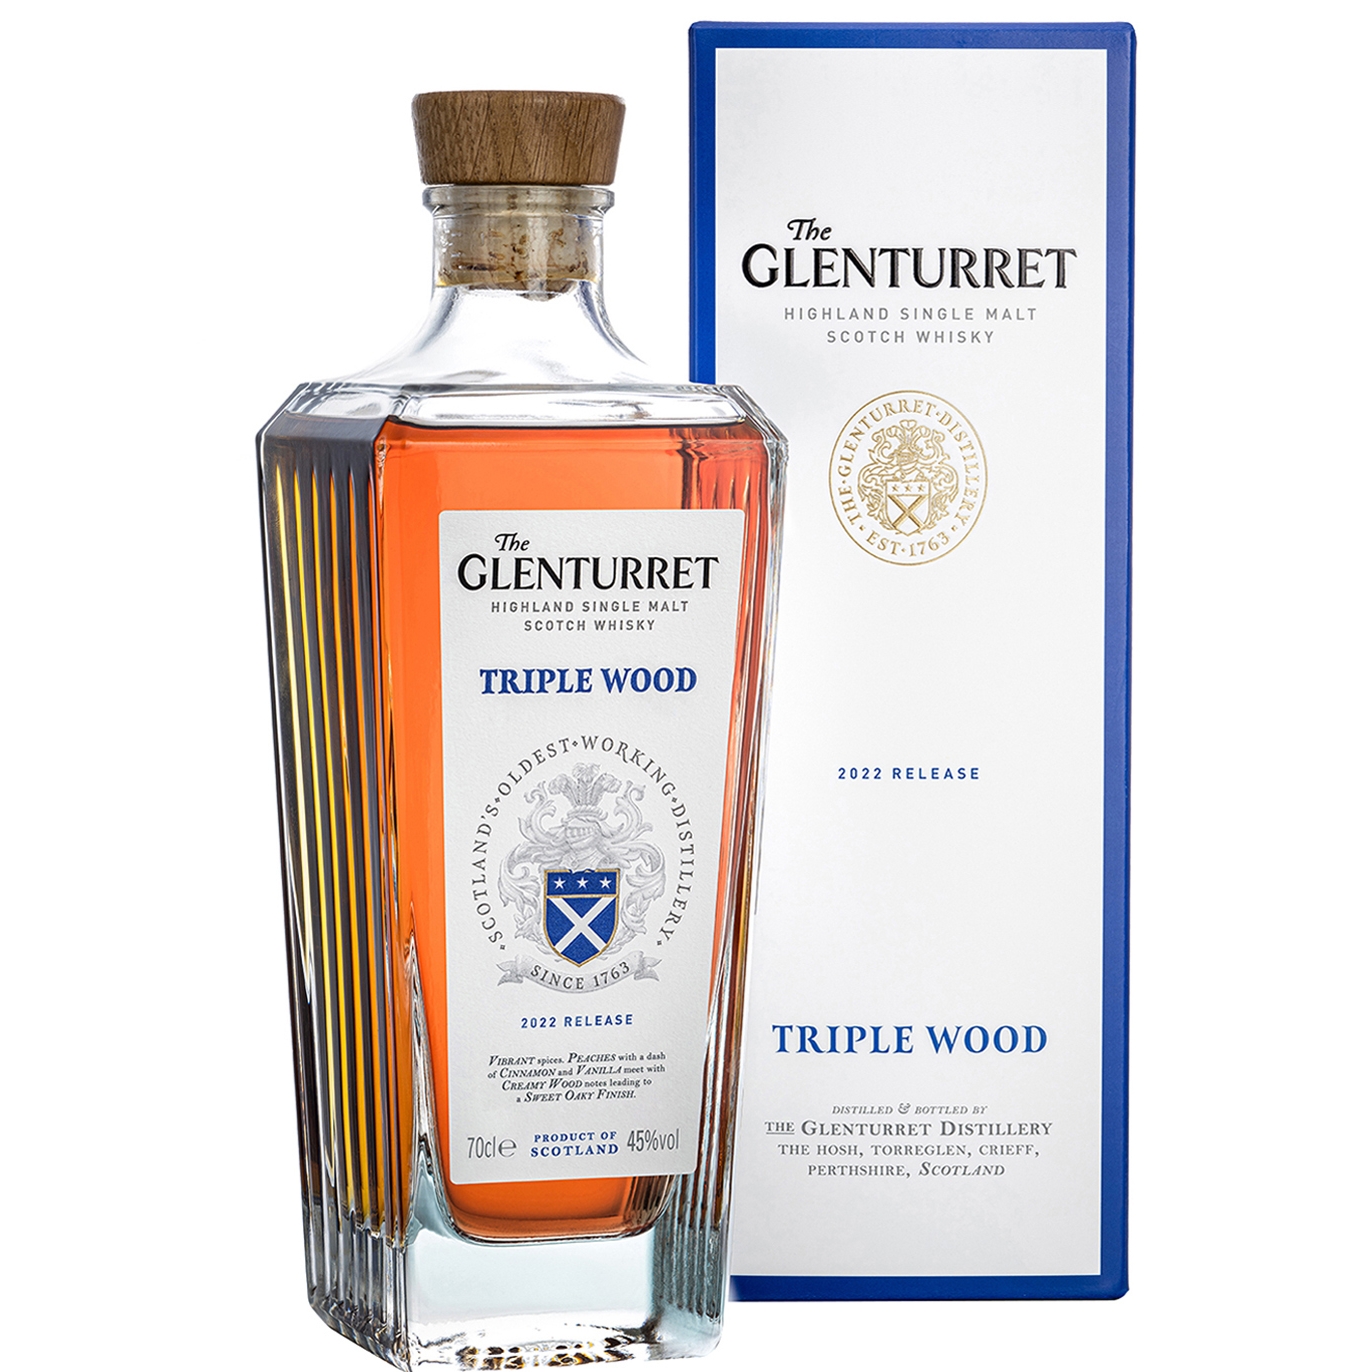 Glenturret Triple Wood 2022 Release Single Malt Scotch Whisky